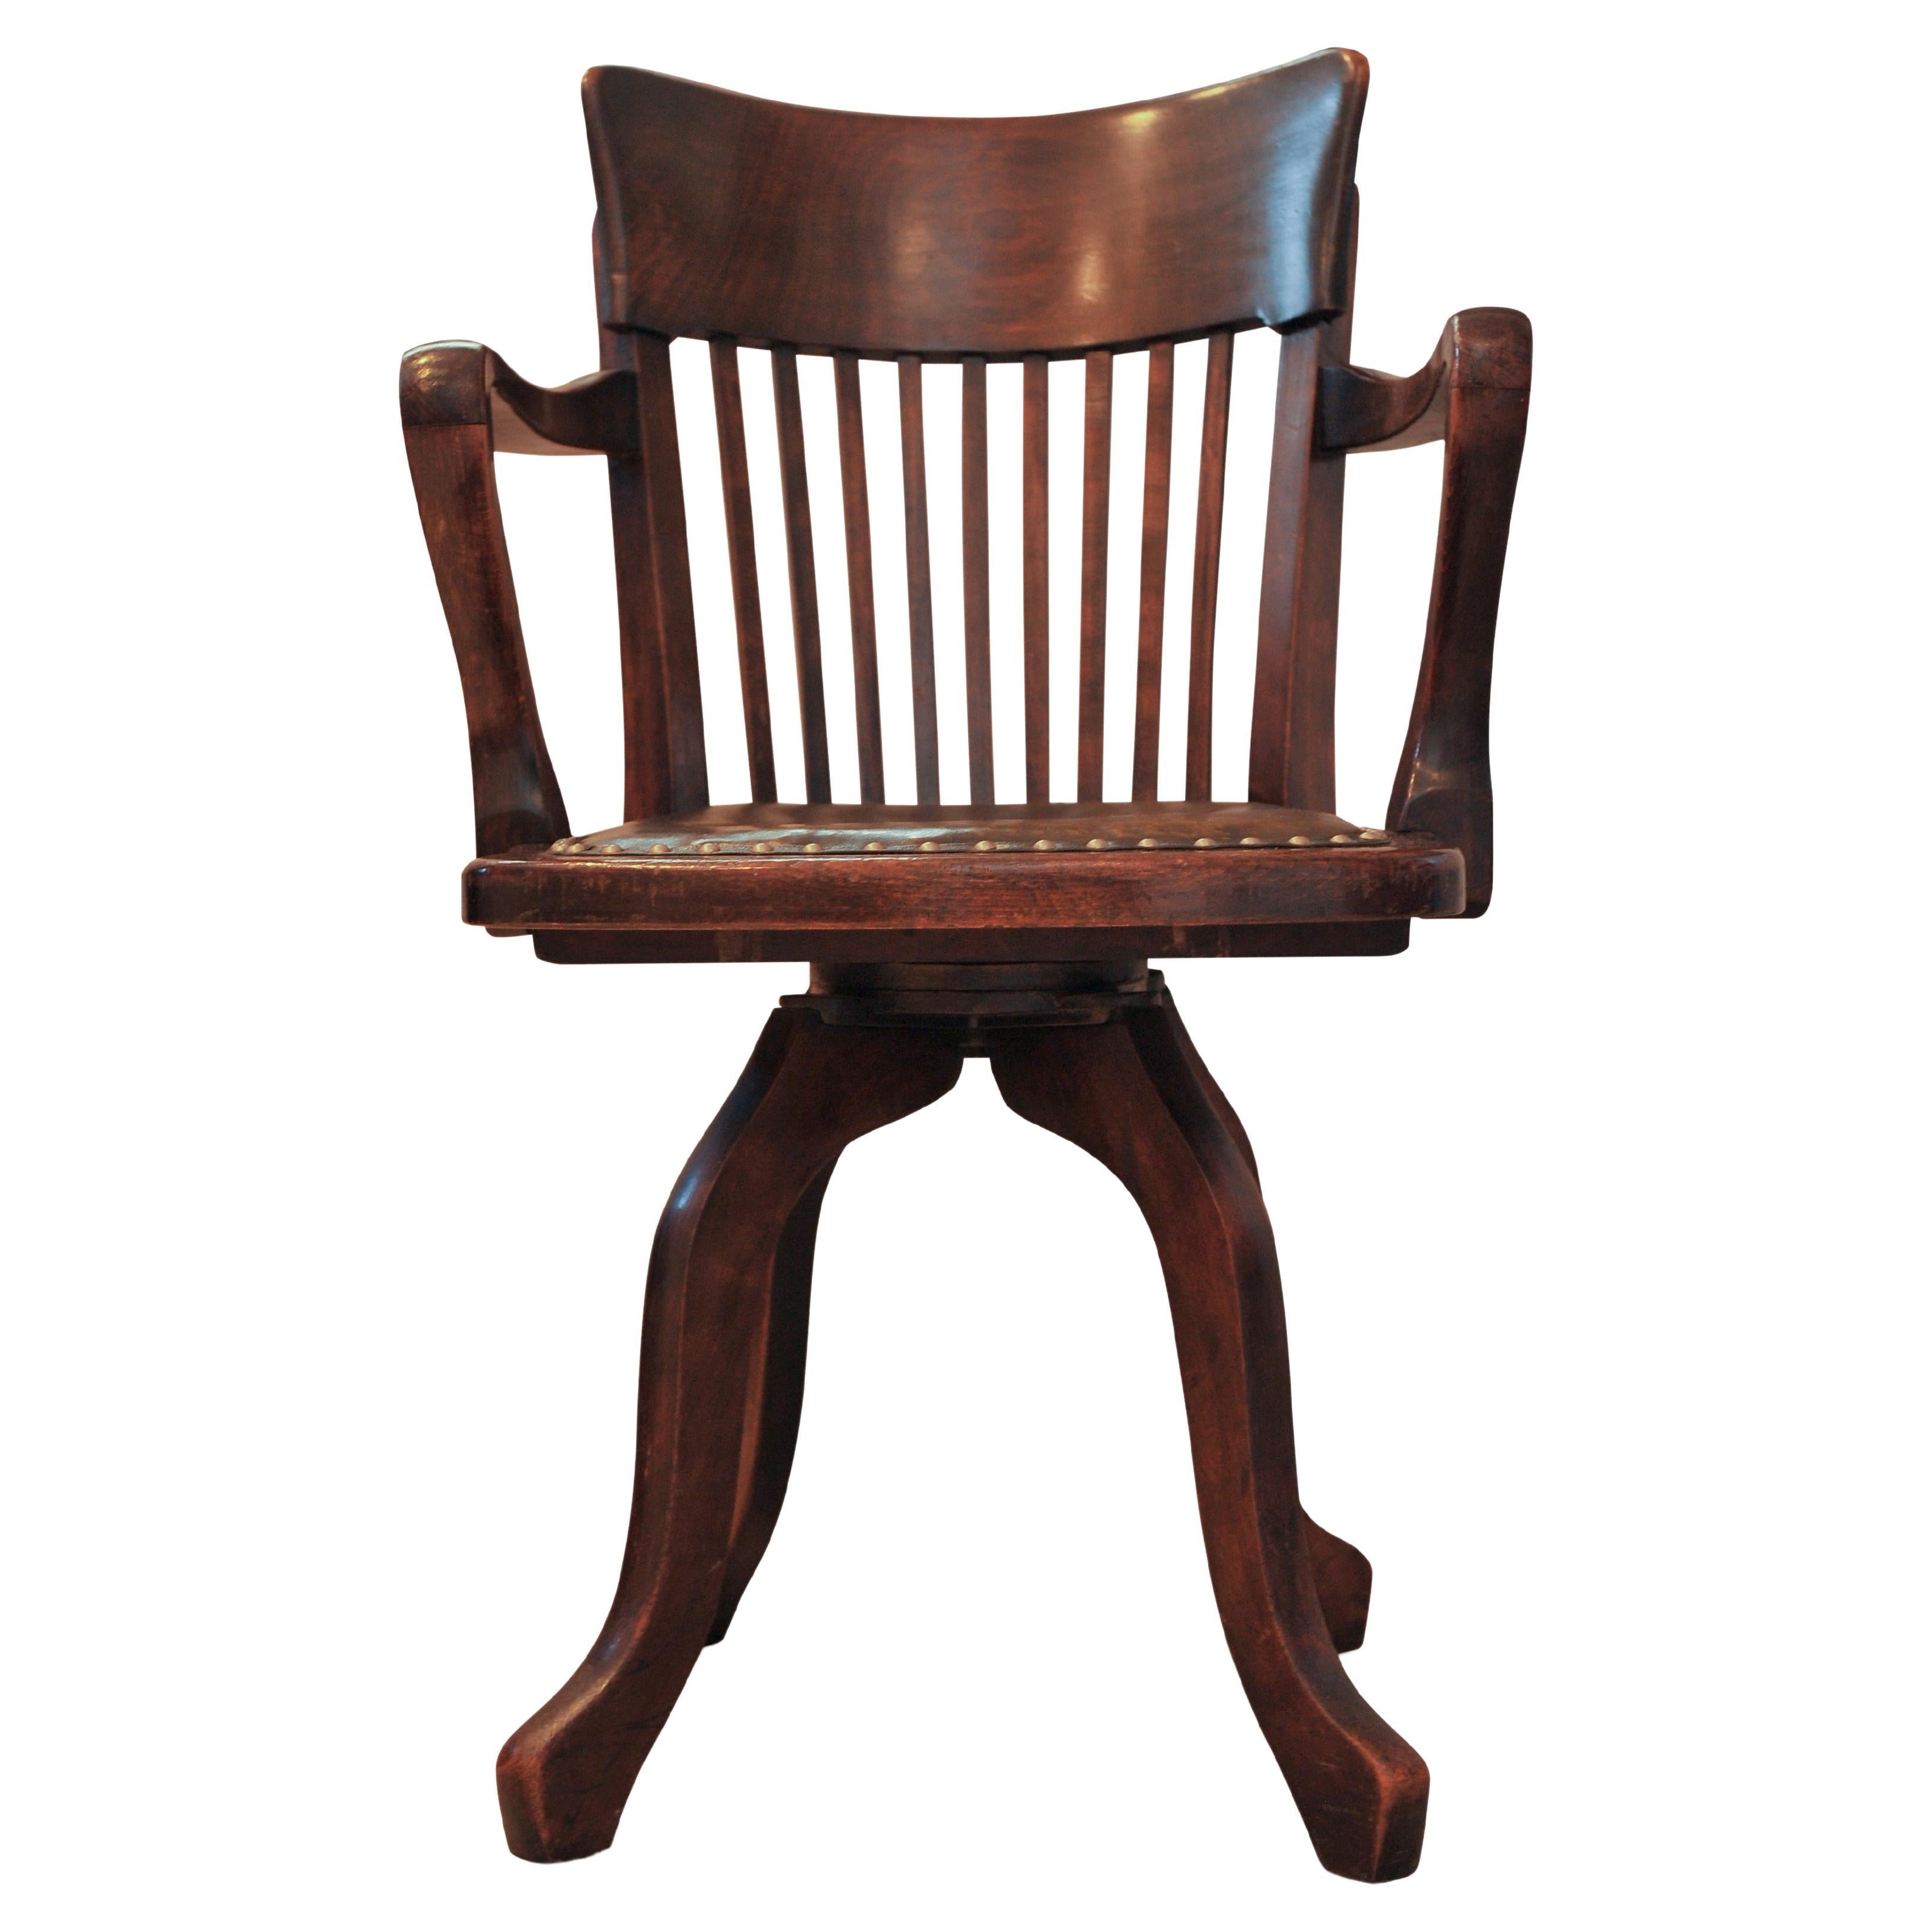 Viktorianische Eiche & Leder Schiene zurück drehbaren Schreibtisch Stuhl mit Stud Detaillierung 

Mit einem dunklen olivgrünen Sitz. 

Die Höhe bis zur Oberkante der Arme beträgt 71,5 cm.




